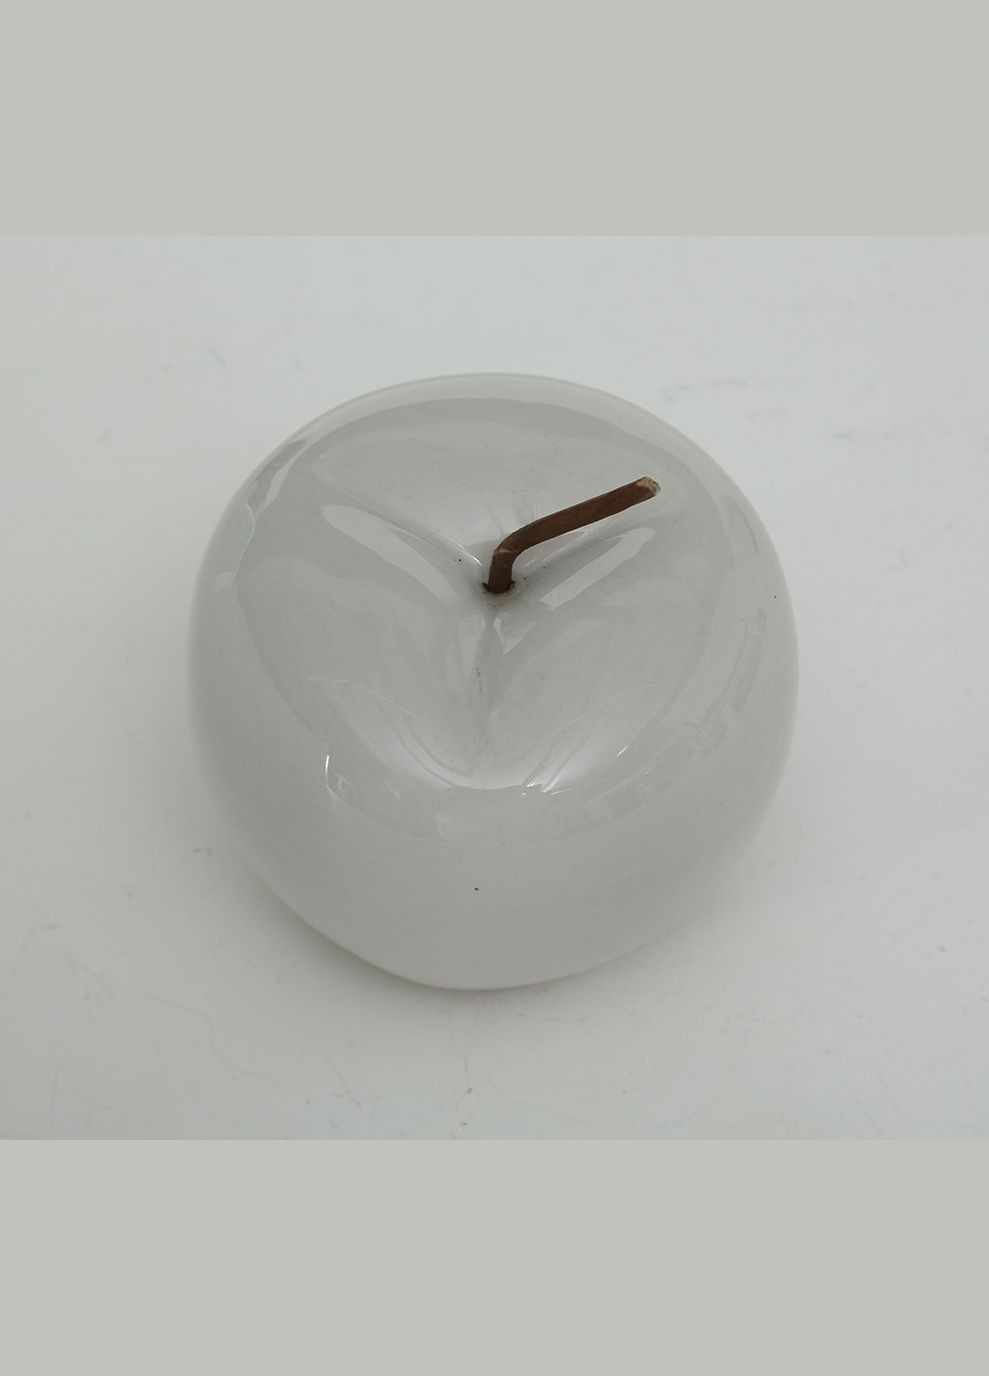 Декоративное яблоко серая керамика h12см (10020962С) Гранд Презент (283039062)